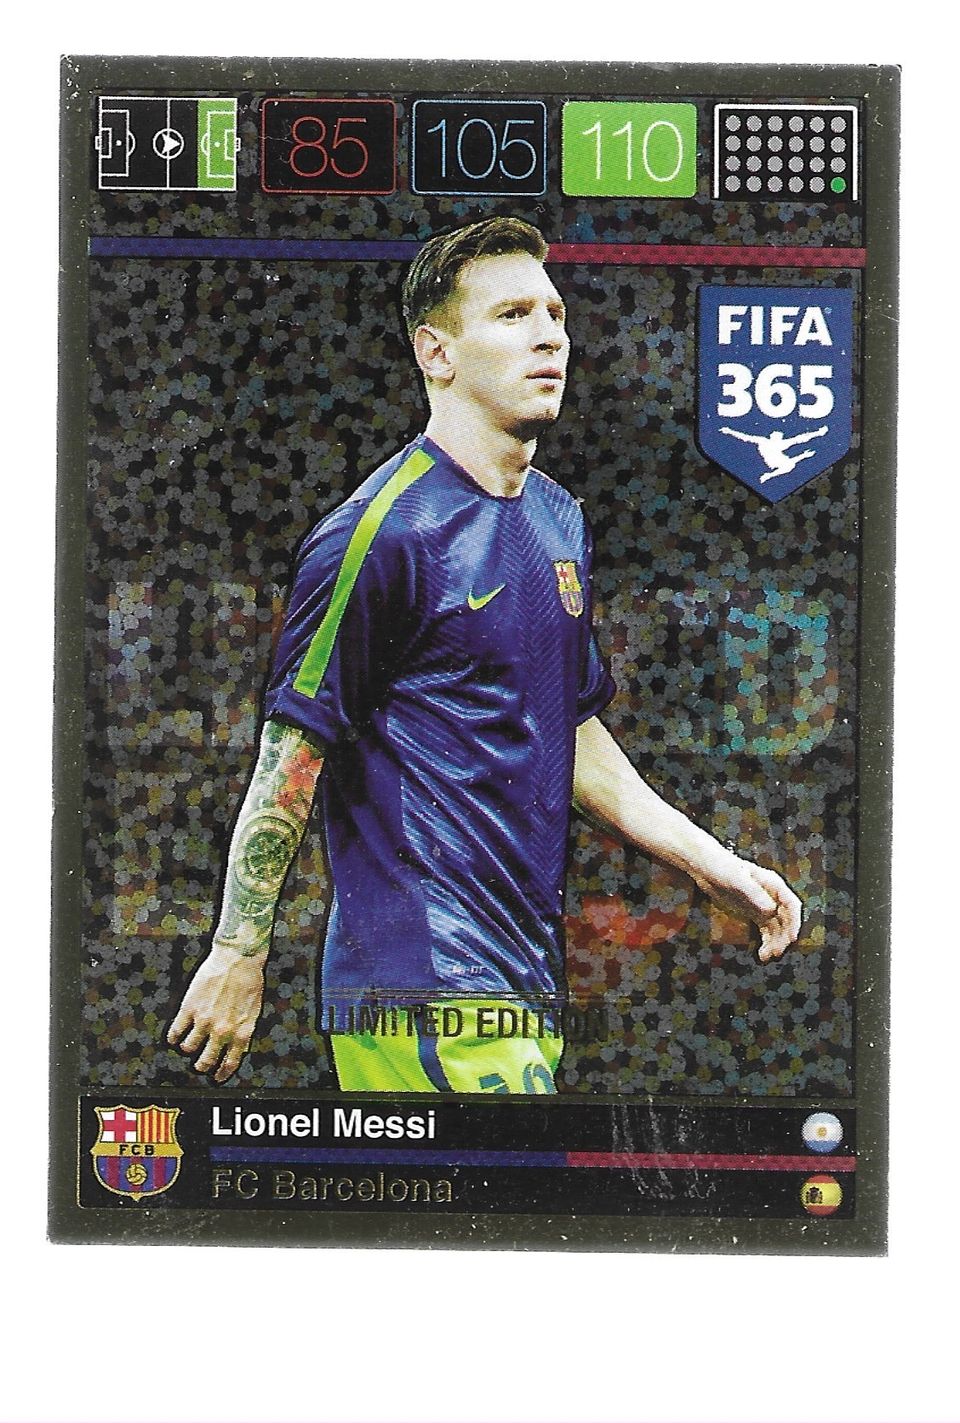 2016 Panini FIFA 365 LIMITED EDITION Lionel Messi (FC Barcelona)